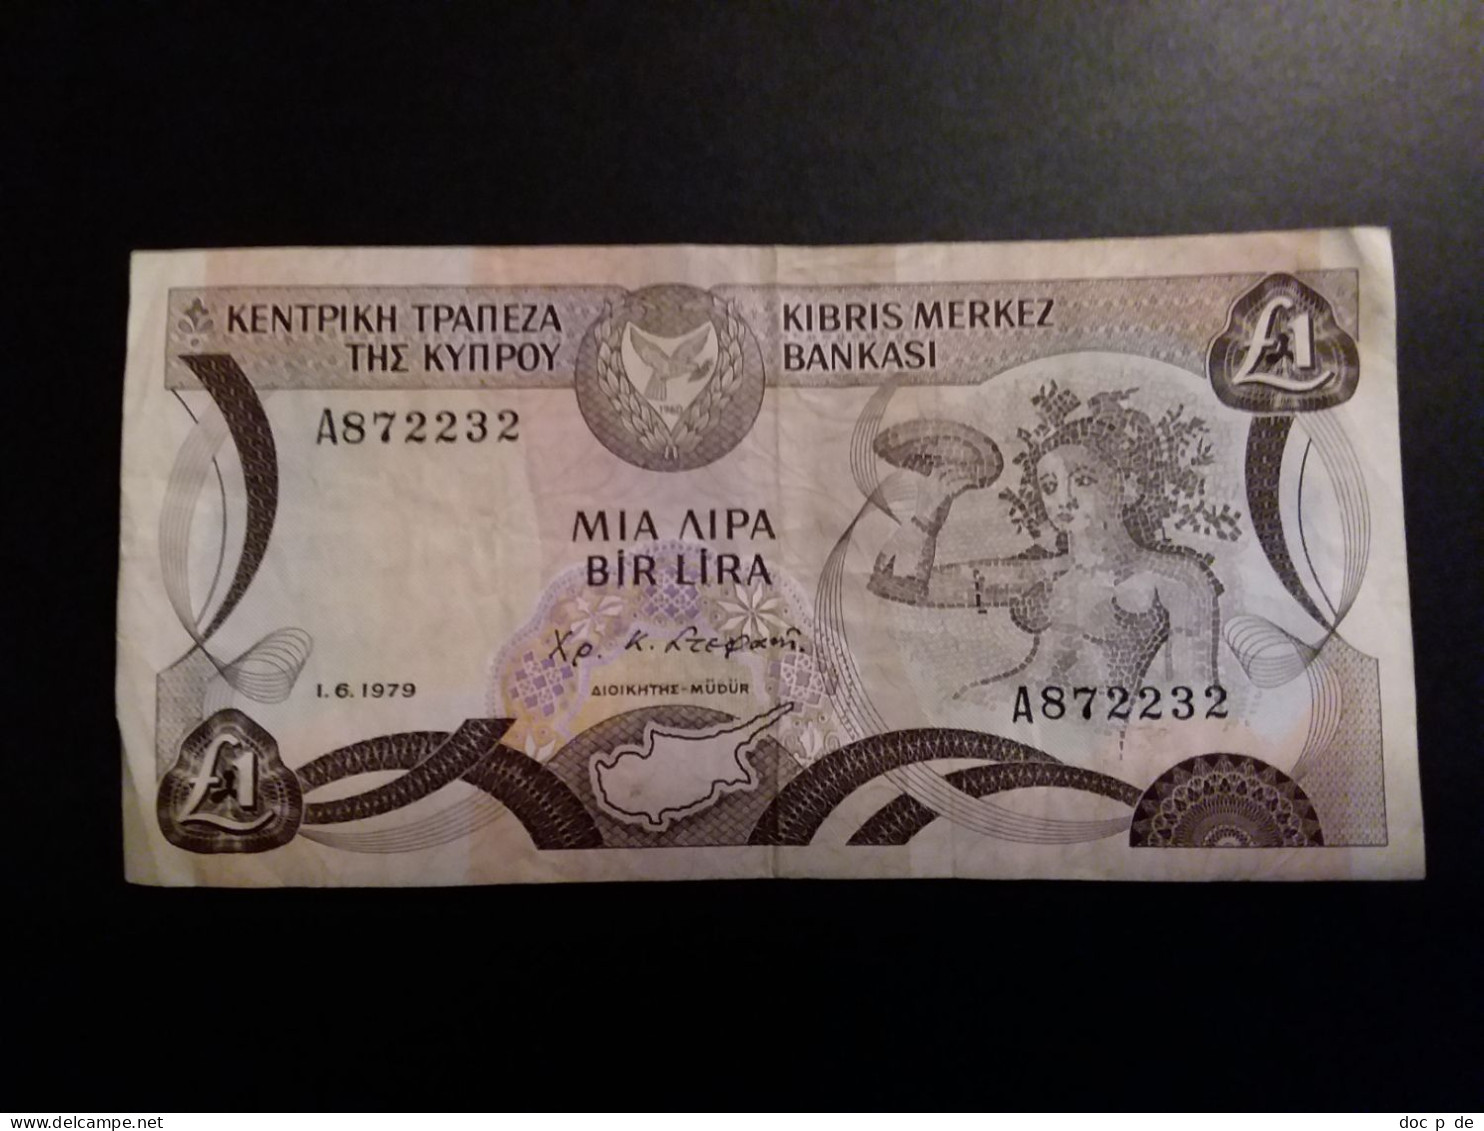 Zypern - Cyprus - Chypre - 1 Pounds - Mia Lira - Bir Lira - 1.6.1979 - A872232 - Used Condition - Cyprus